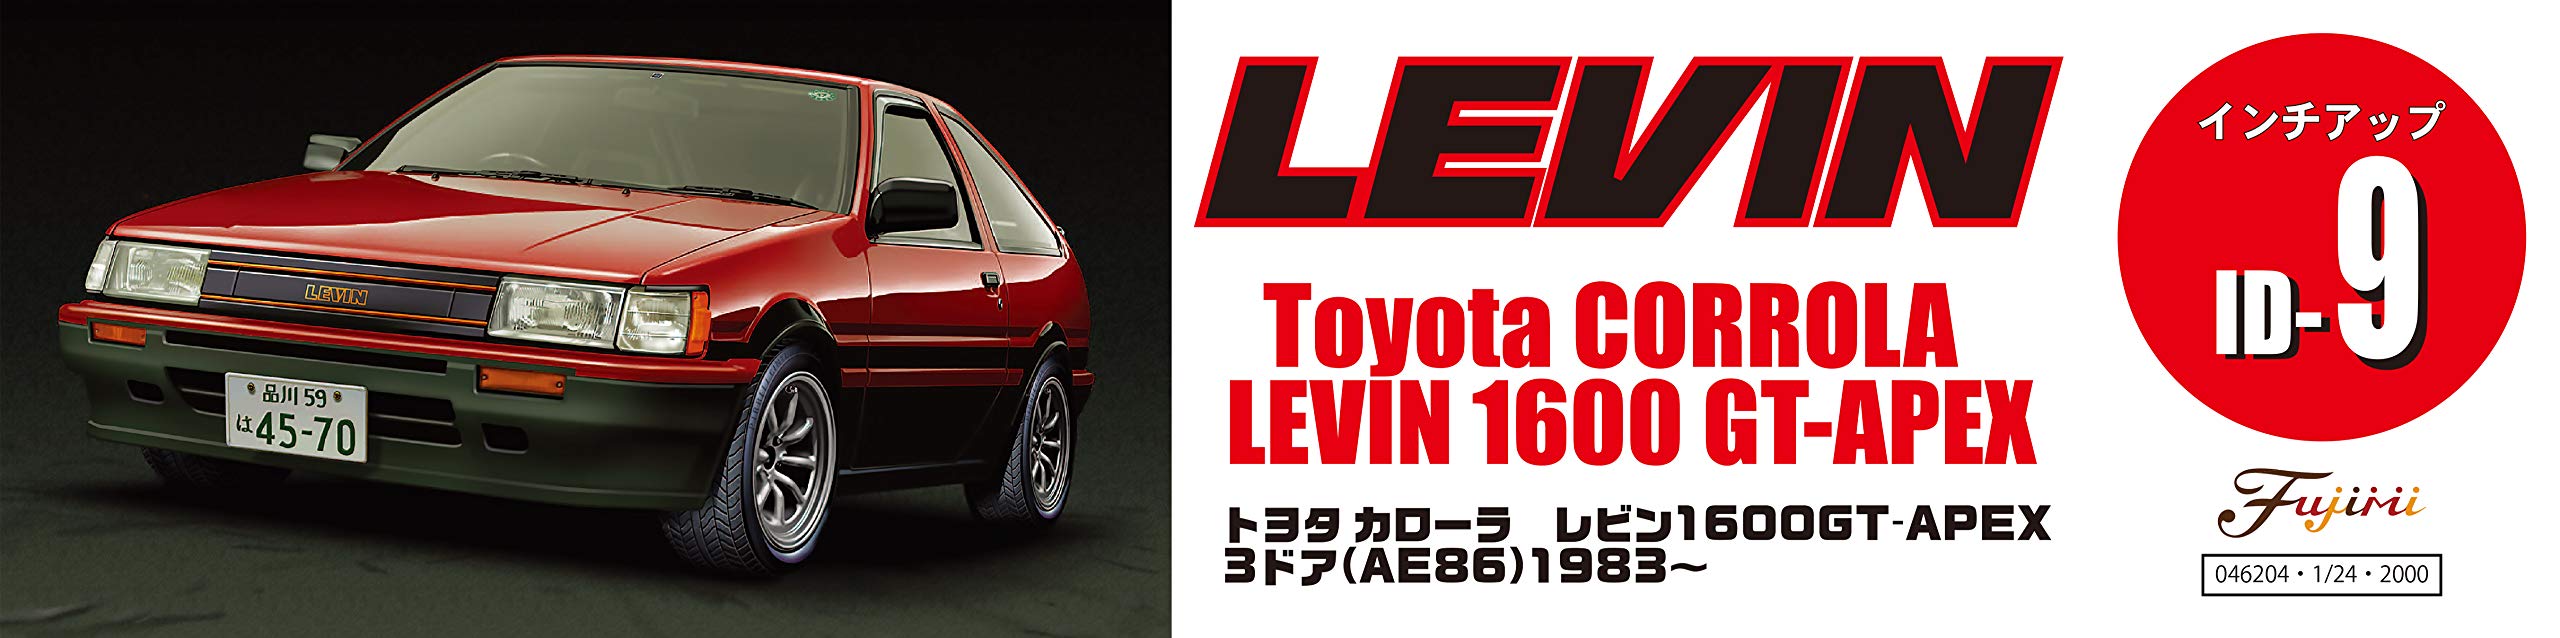 Fujimi Inch Up 1/24 No.9 Toyota Corolla Levin 1600 83 Modèle de voiture japonaise pré-peinte